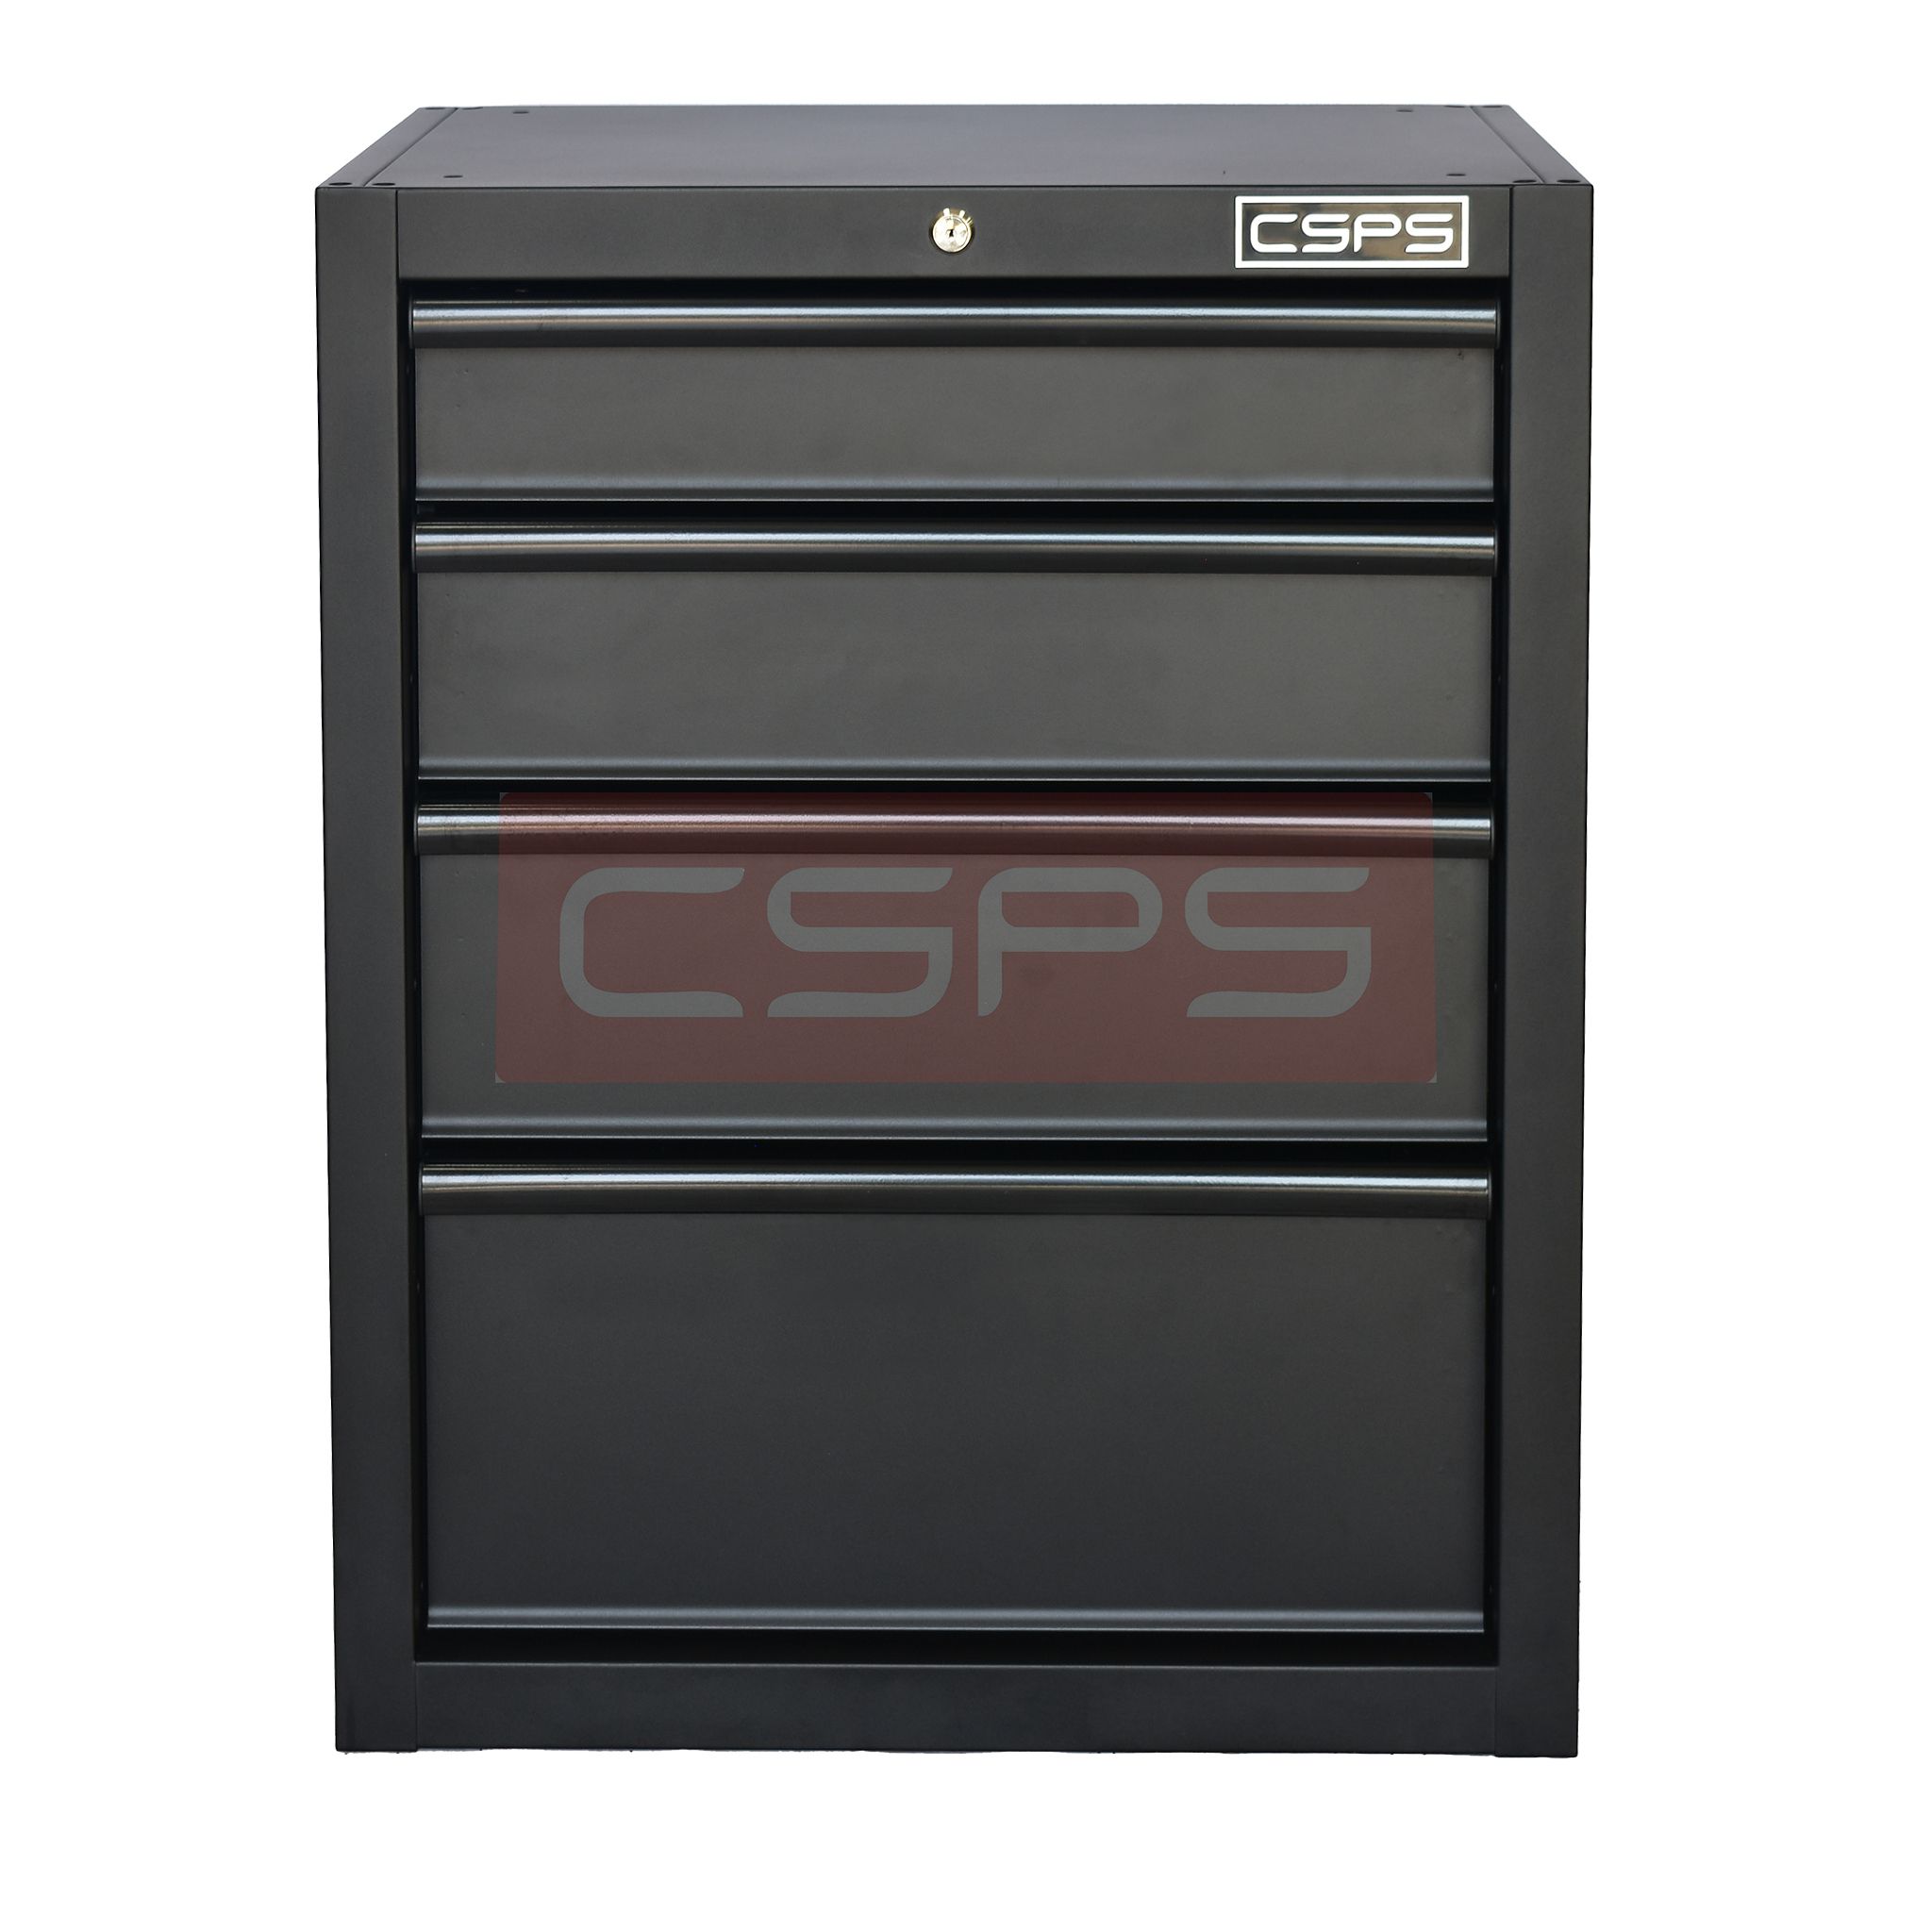  Tủ dụng cụ CSPS 61cm - 04 hộc kéo màu đen/đỏ 